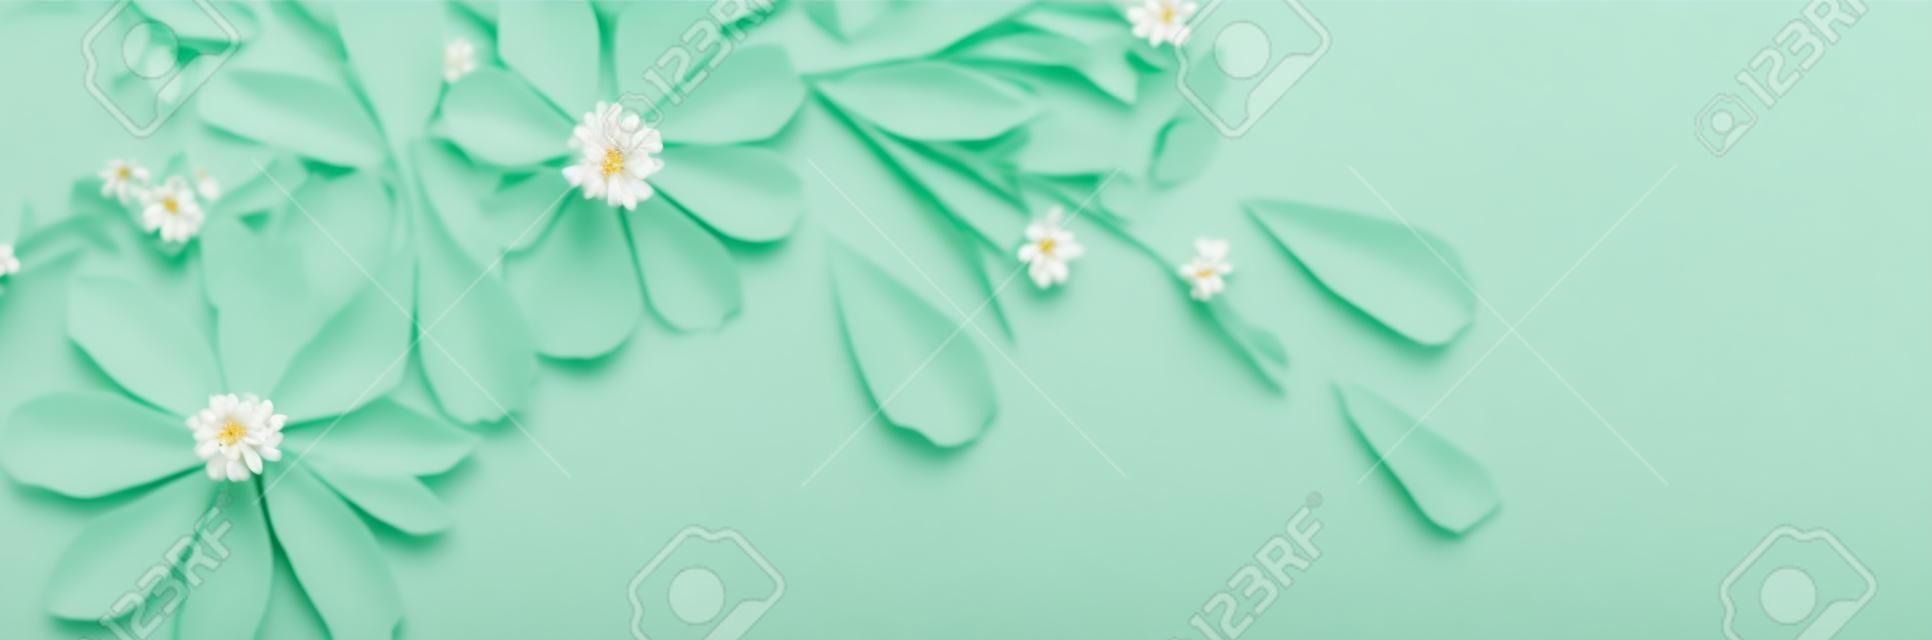 witte bloemen op groen papier achtergrond